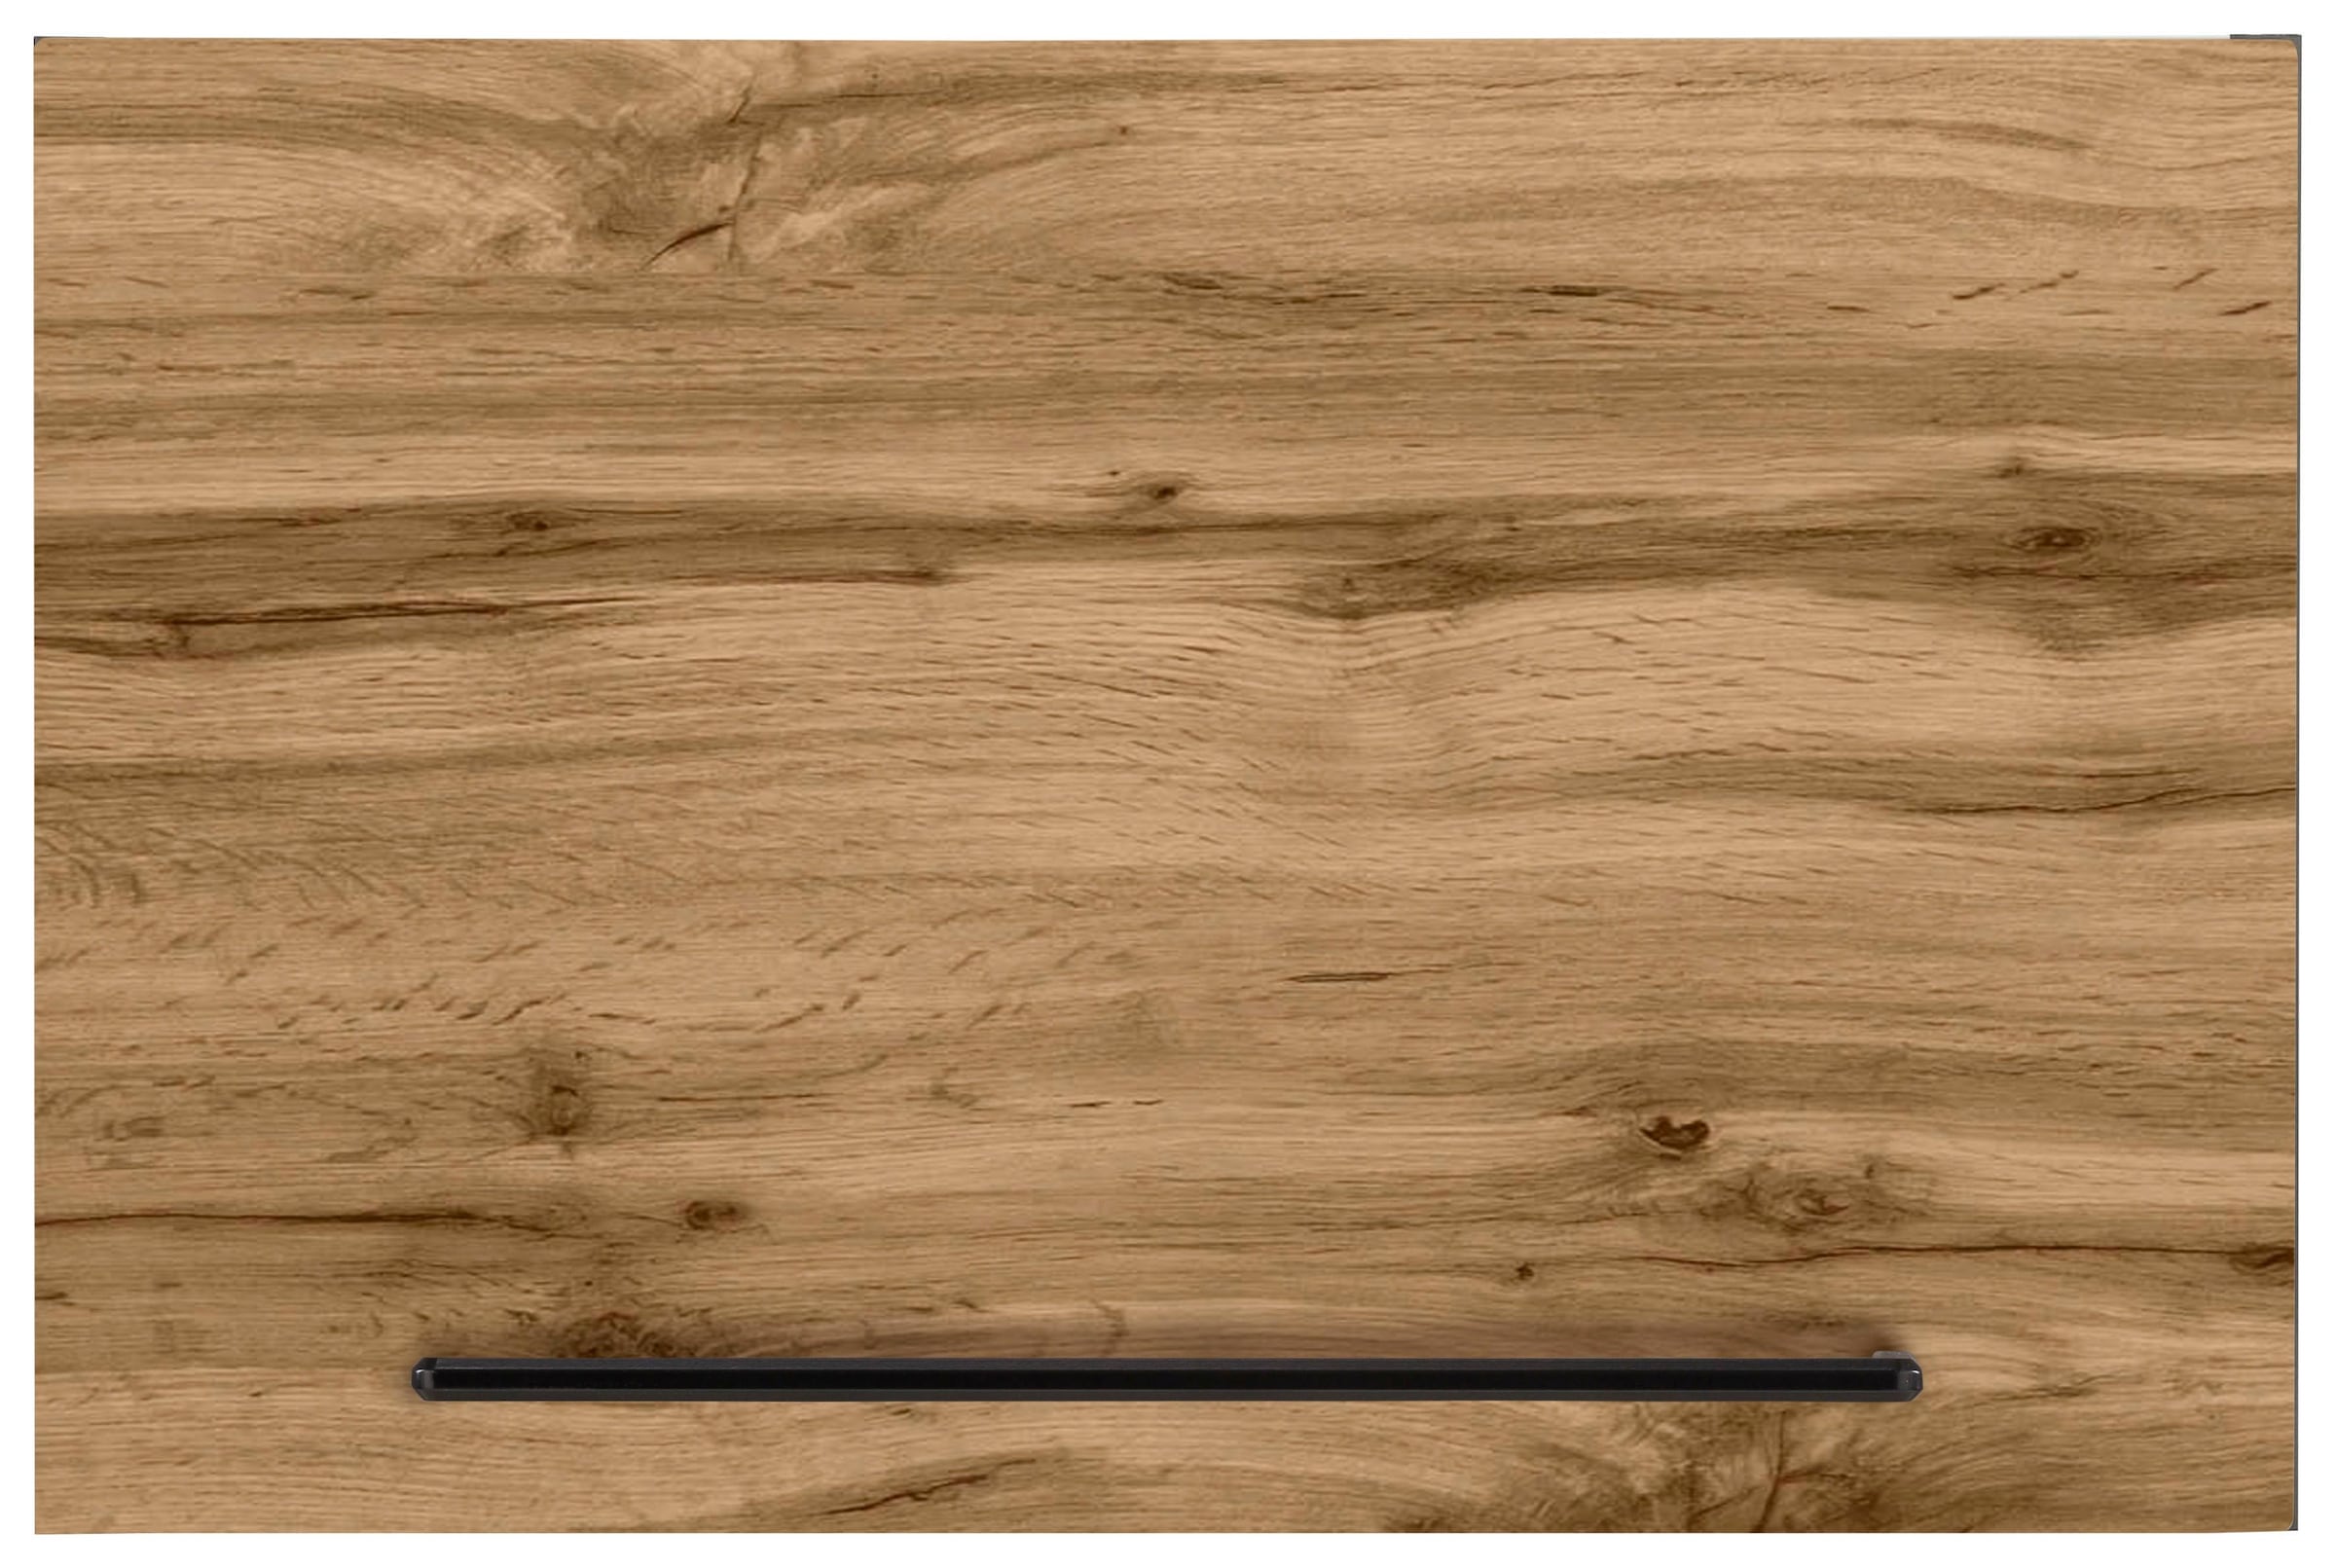 HELD MÖBEL Klapphängeschrank »Tulsa«, 50 cm breit, mit 1 Klappe, schwarzer Metallgriff, MDF Front